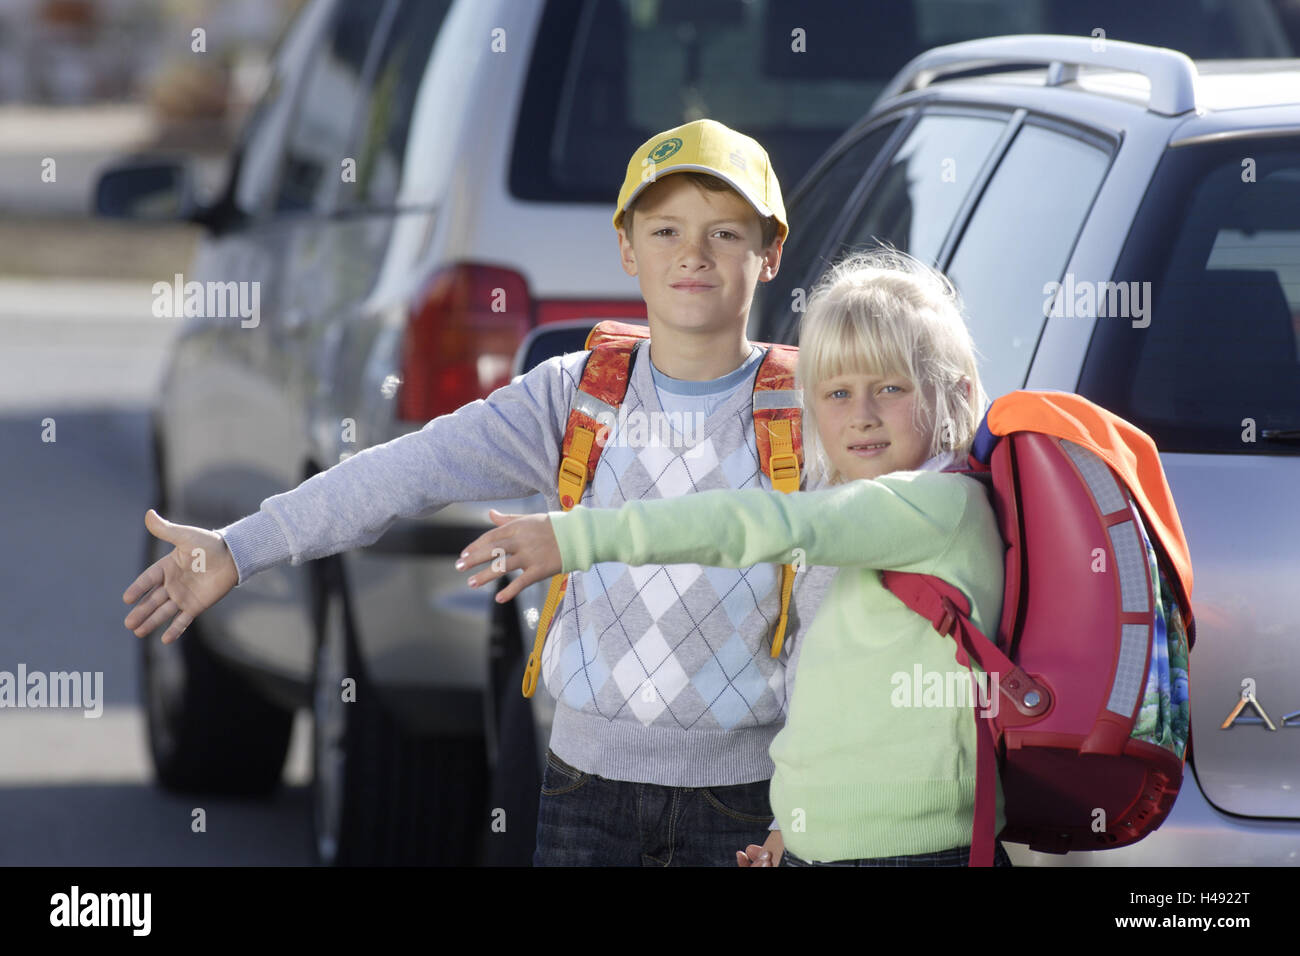 El colegial, el niño, la niña, la mano figura, escuela, automóviles, Foto de stock